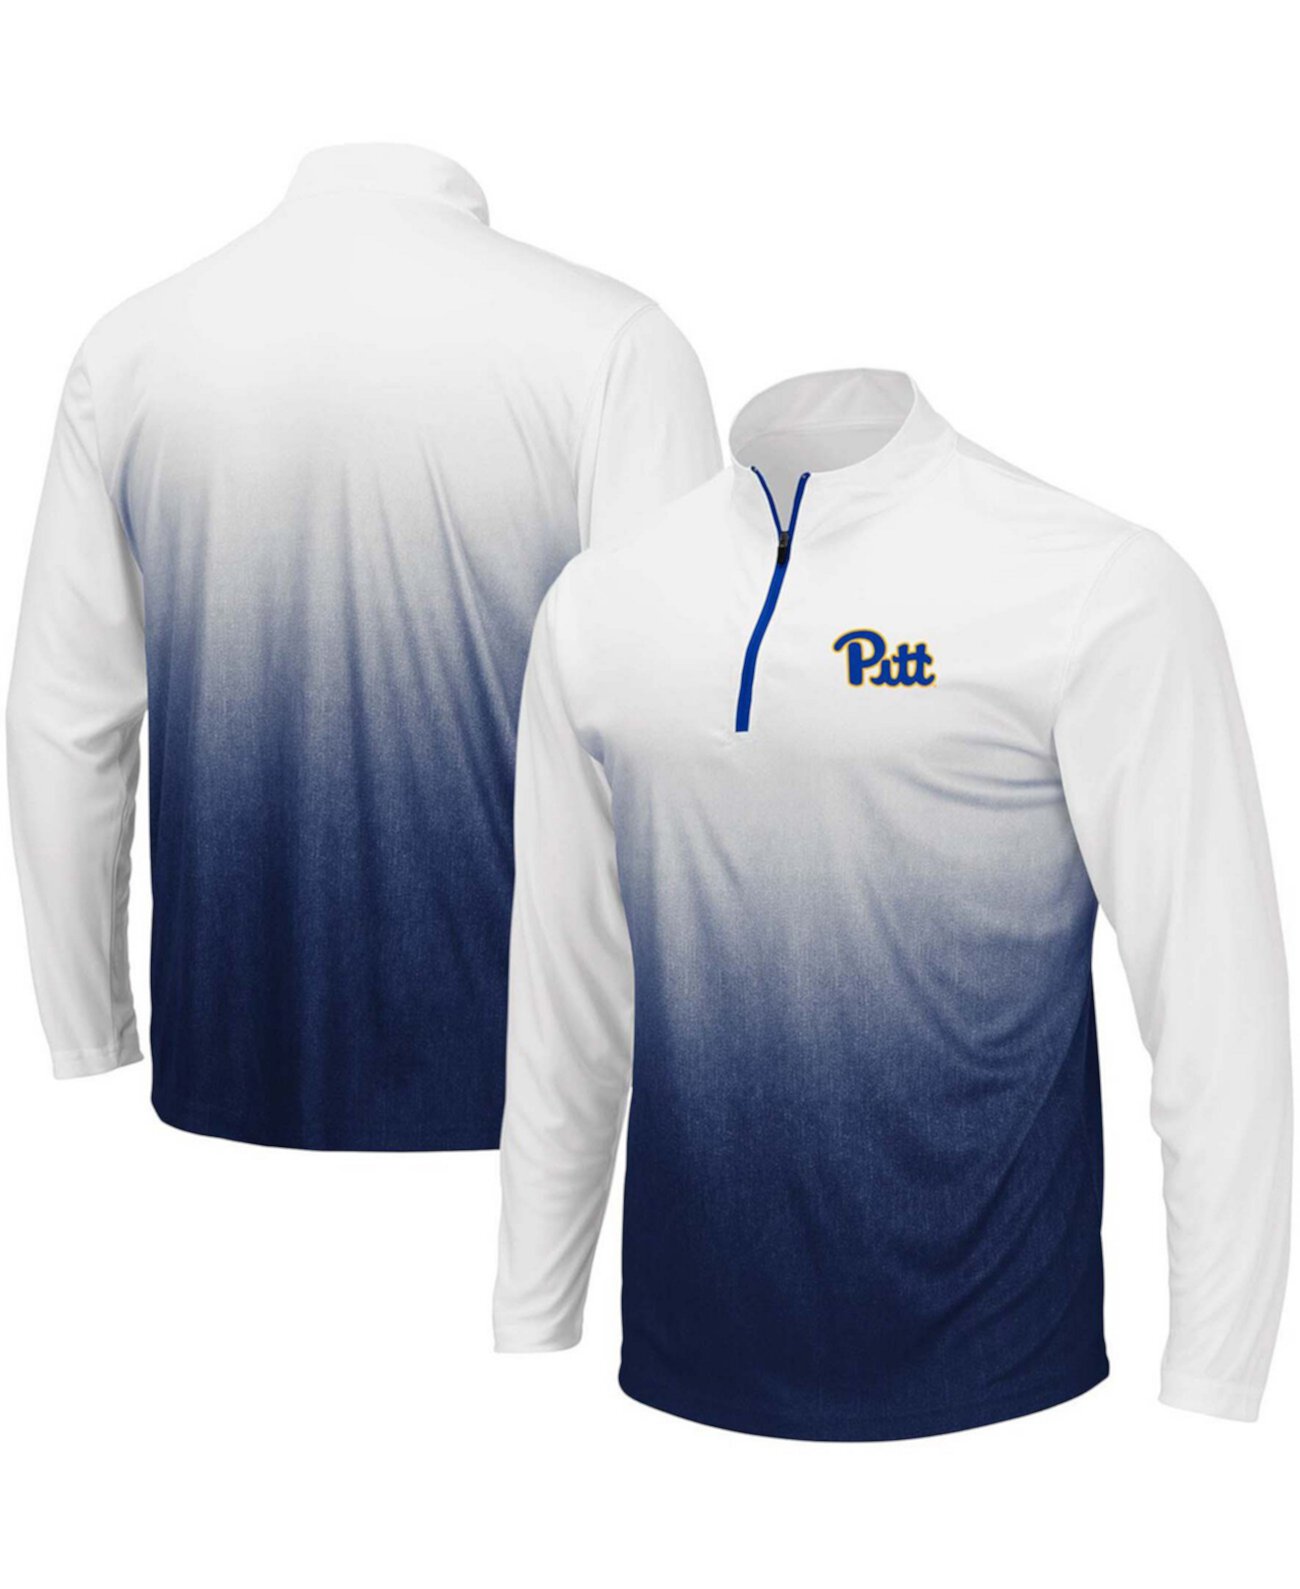 Темно-синяя мужская куртка на молнии с логотипом Pitt Panthers Magic Team Colosseum